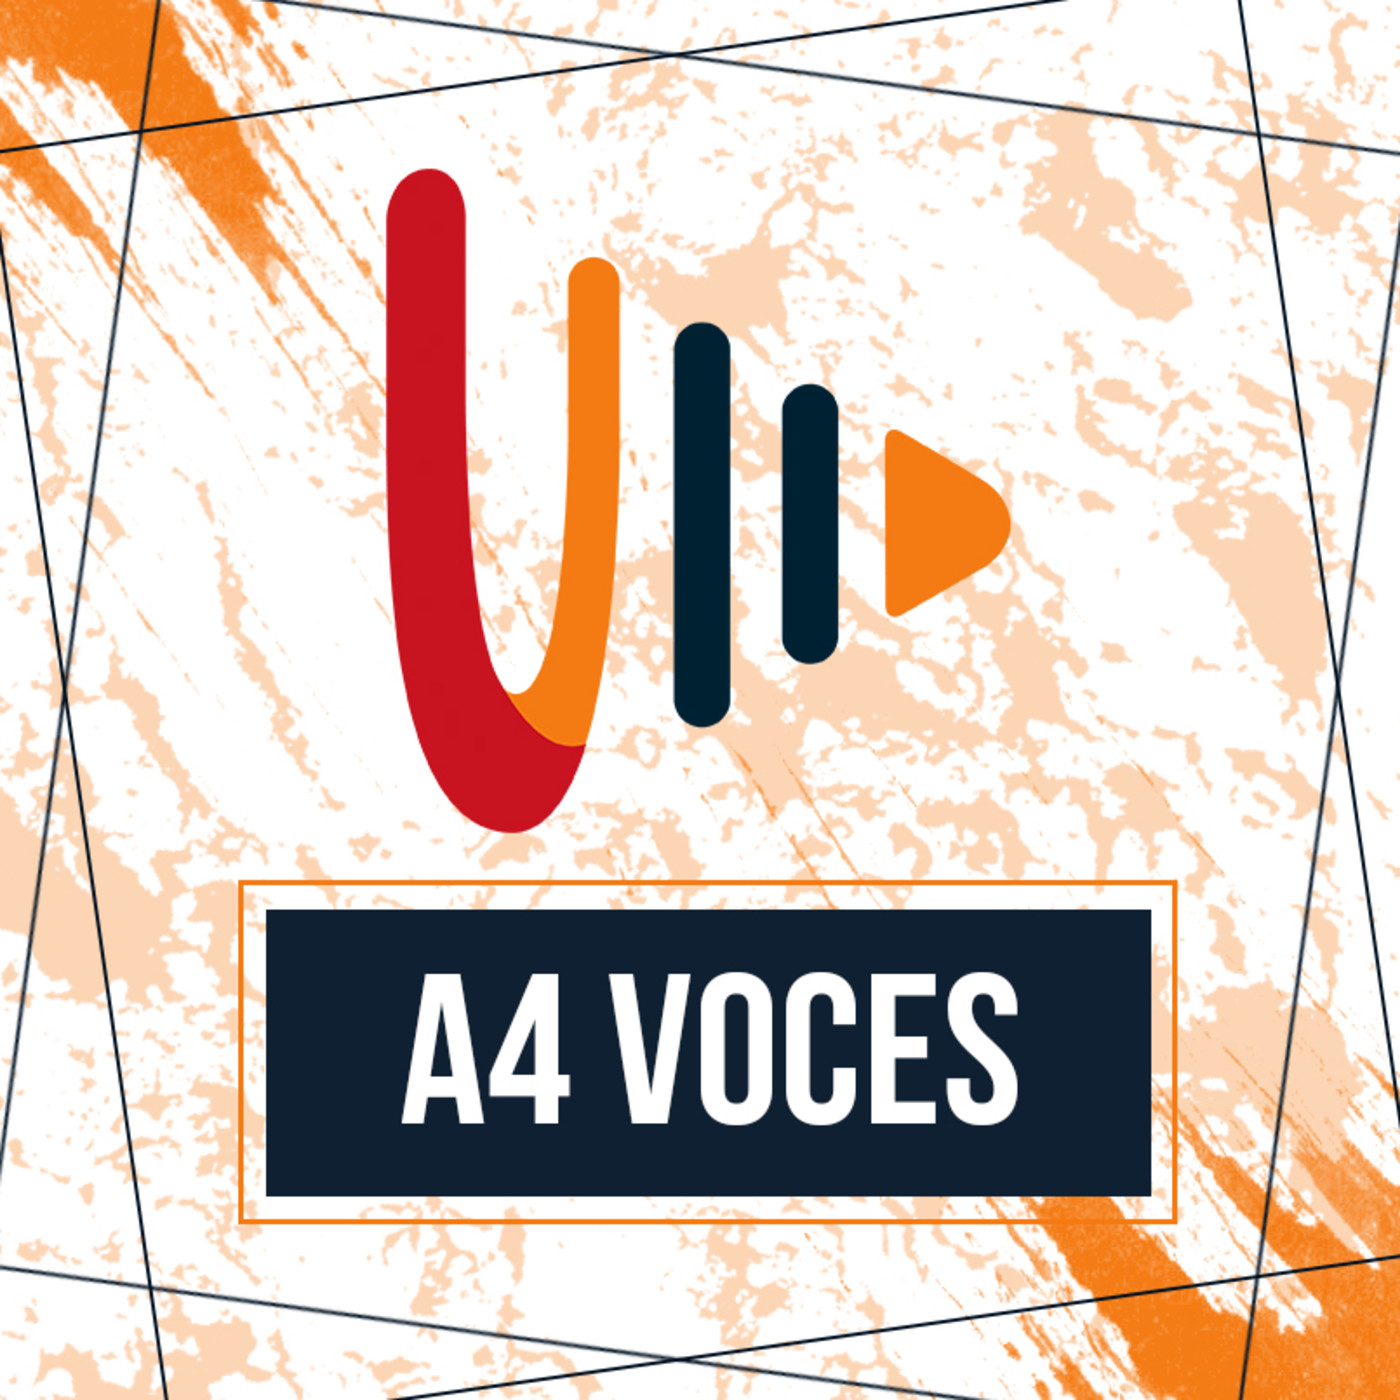 A 4 Voces Entrevista con Grupo De Comunicación Social - Educación En Redes Sociales